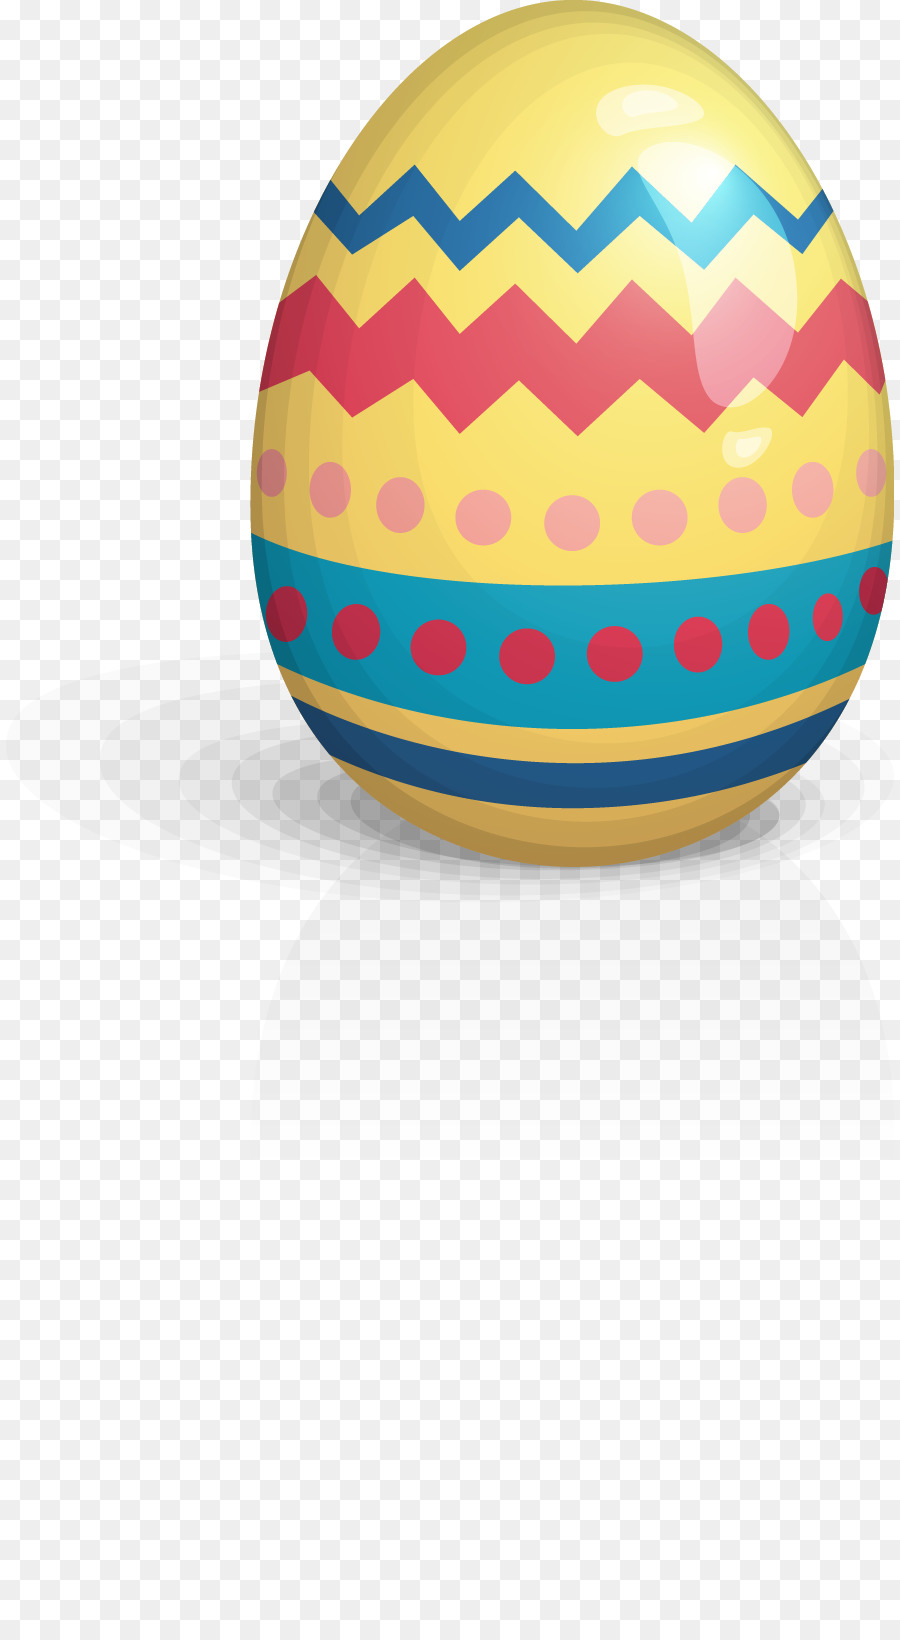 Easter Bunny Easter egg Egg hunt - Easter Vector png download - 888*1640 - Free Transparent Easter Bunny png Download.